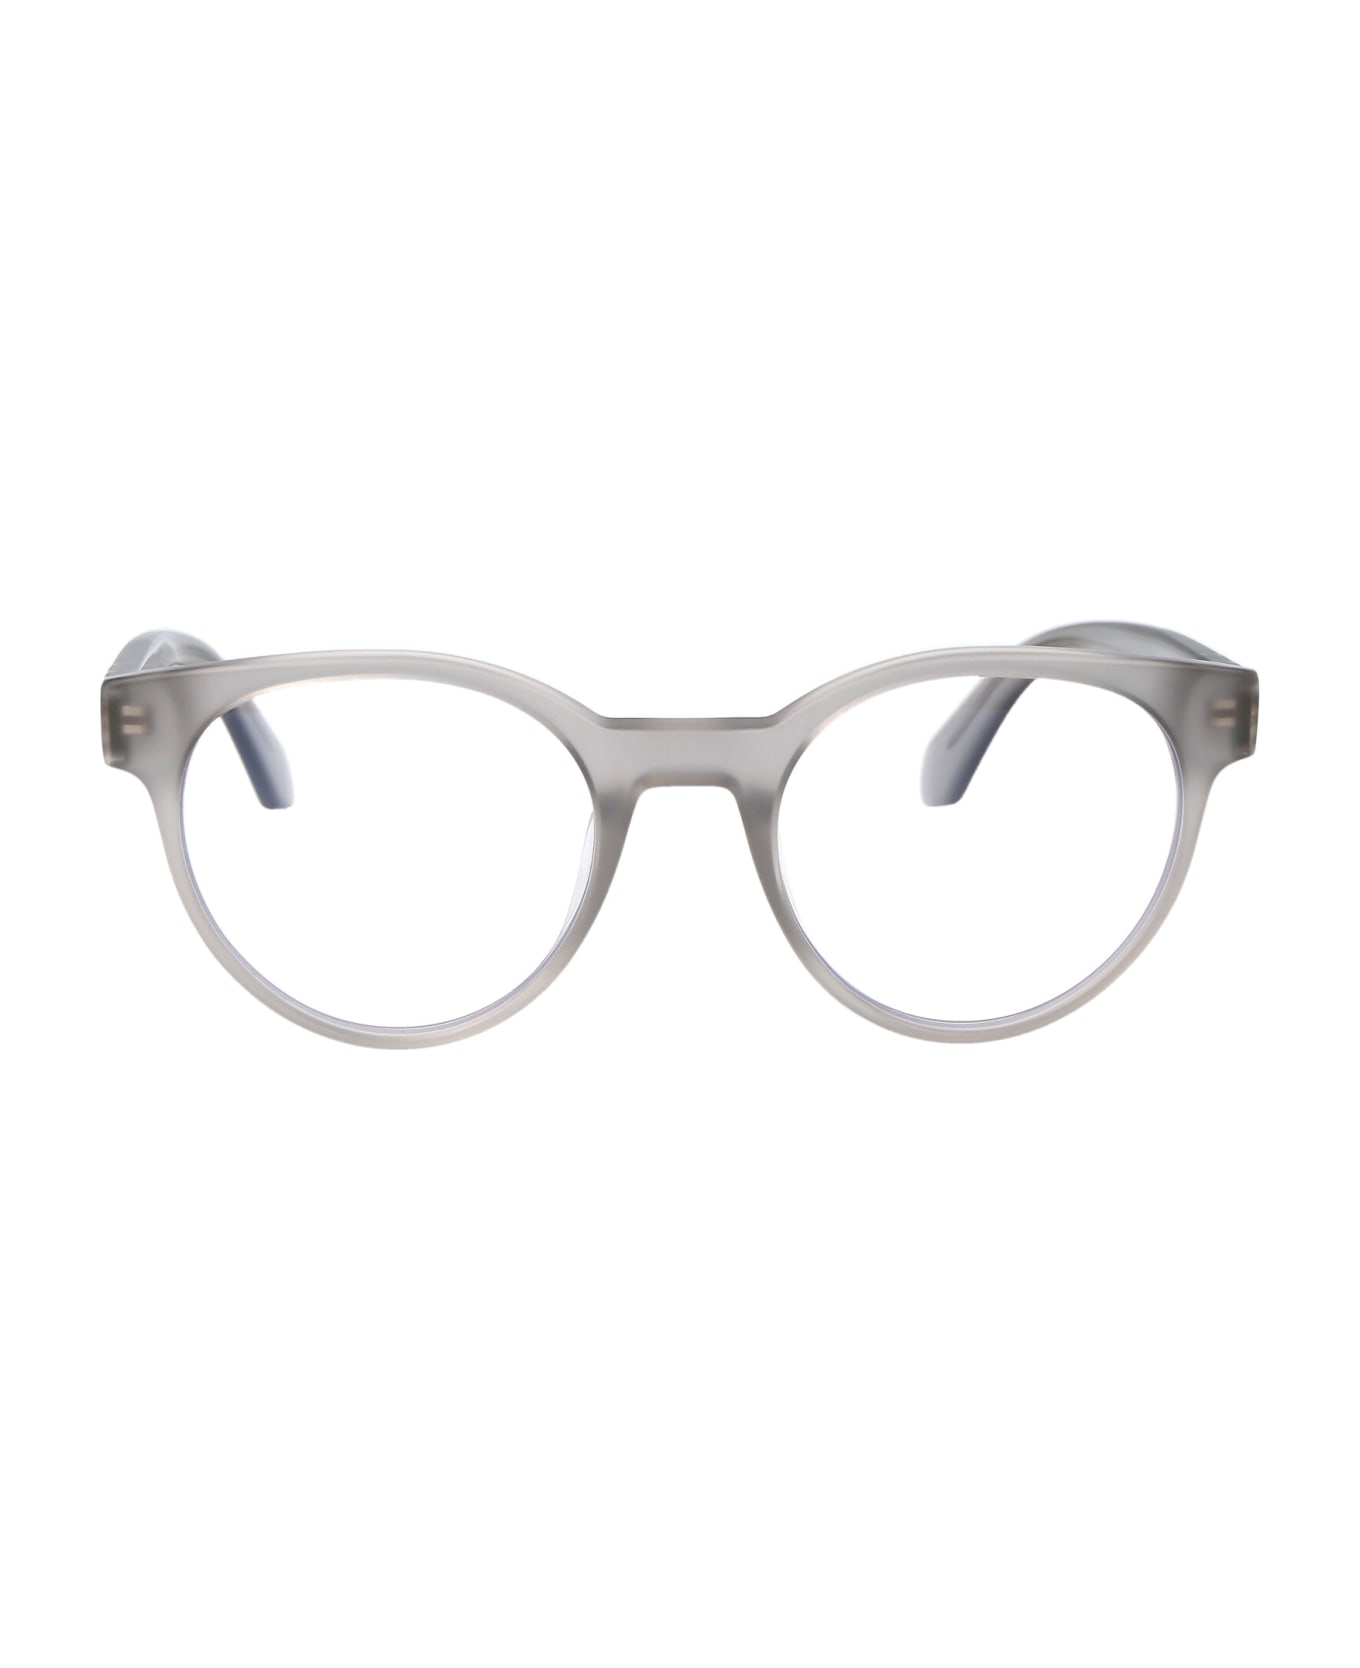 Off-White Optical Style 68 Glasses - 0900 GREY  アイウェア